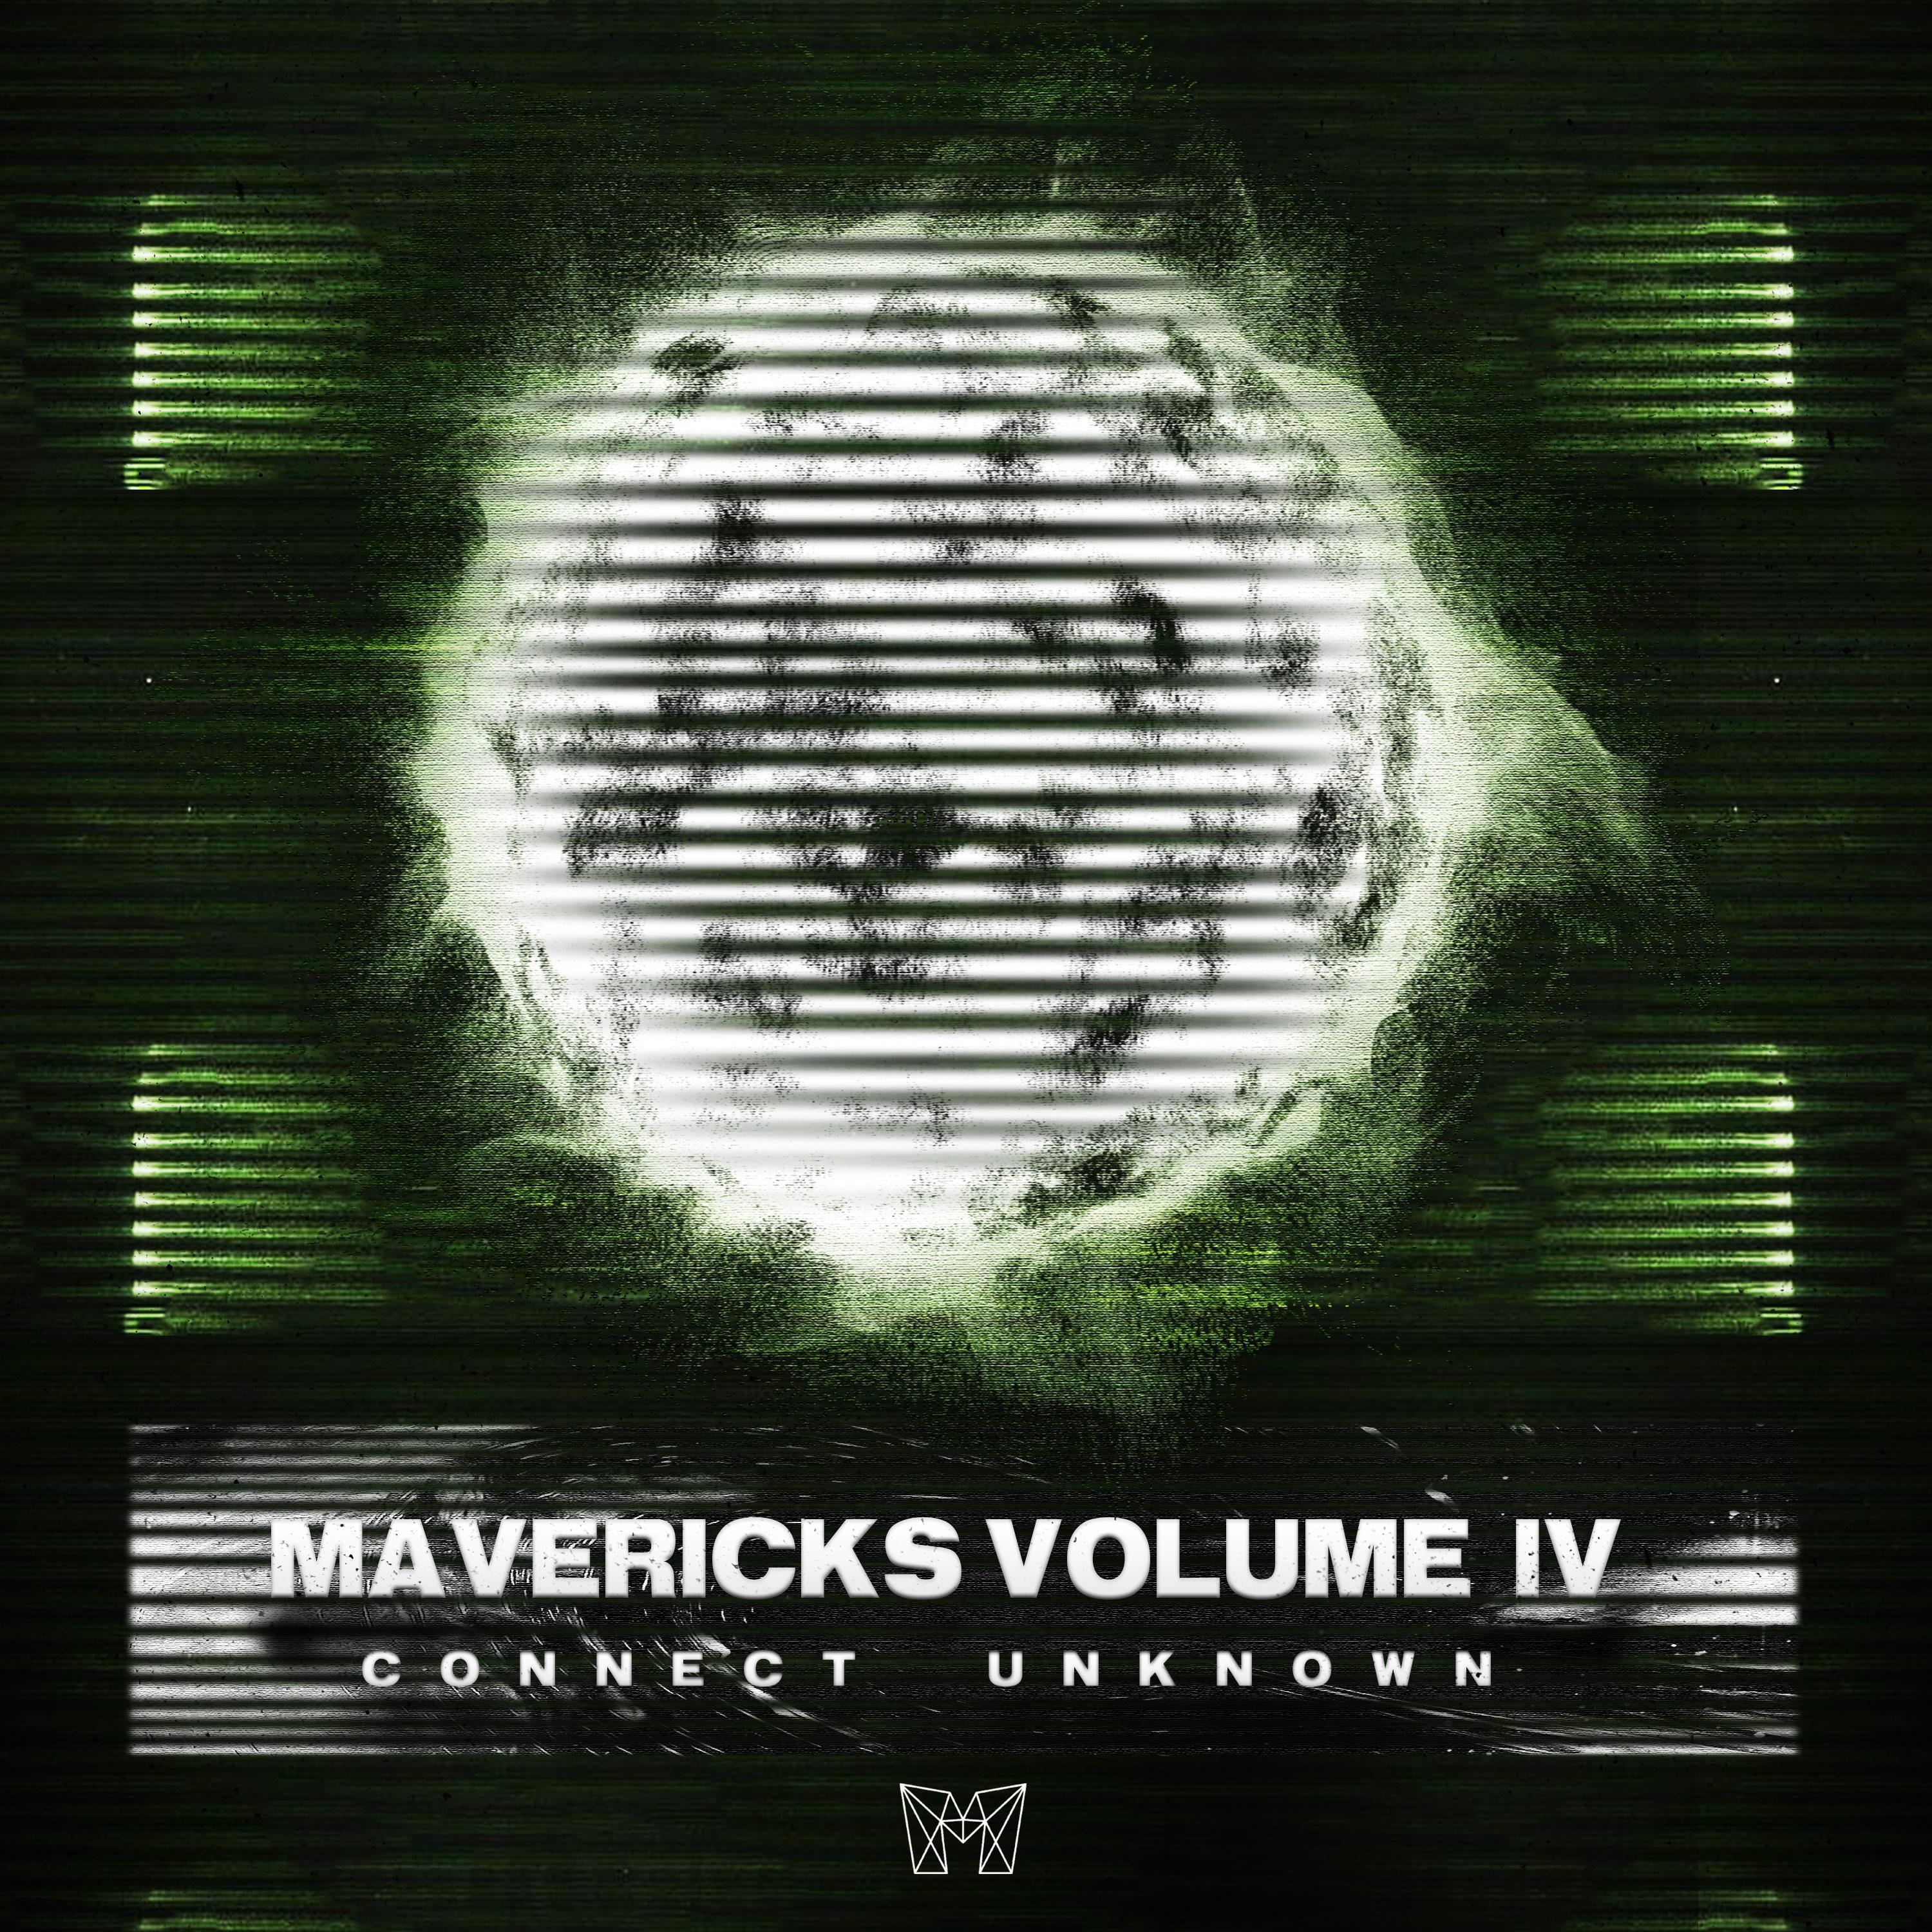 MAVERICKS VOLUME IV